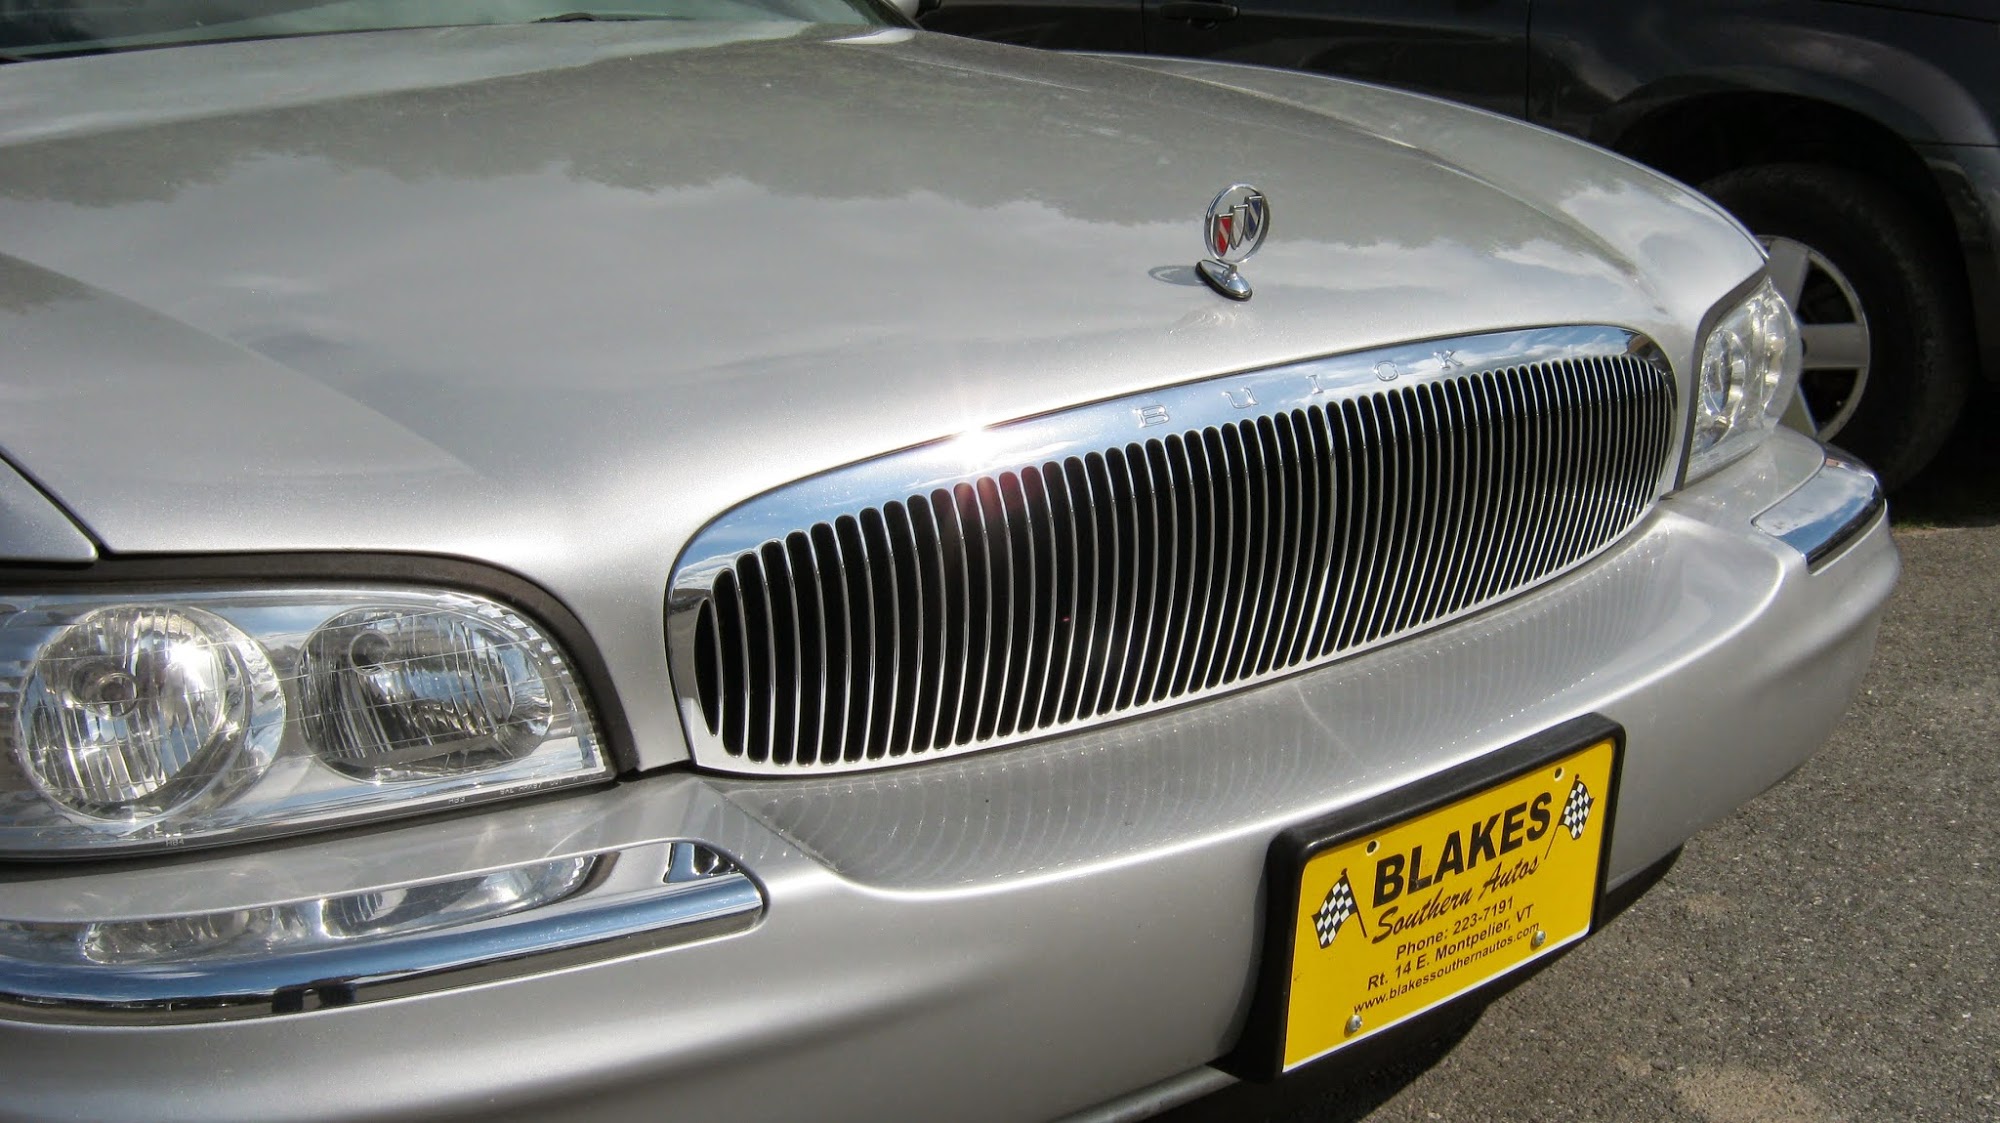 Blake's Southern Used Cars (Blake & Loso)